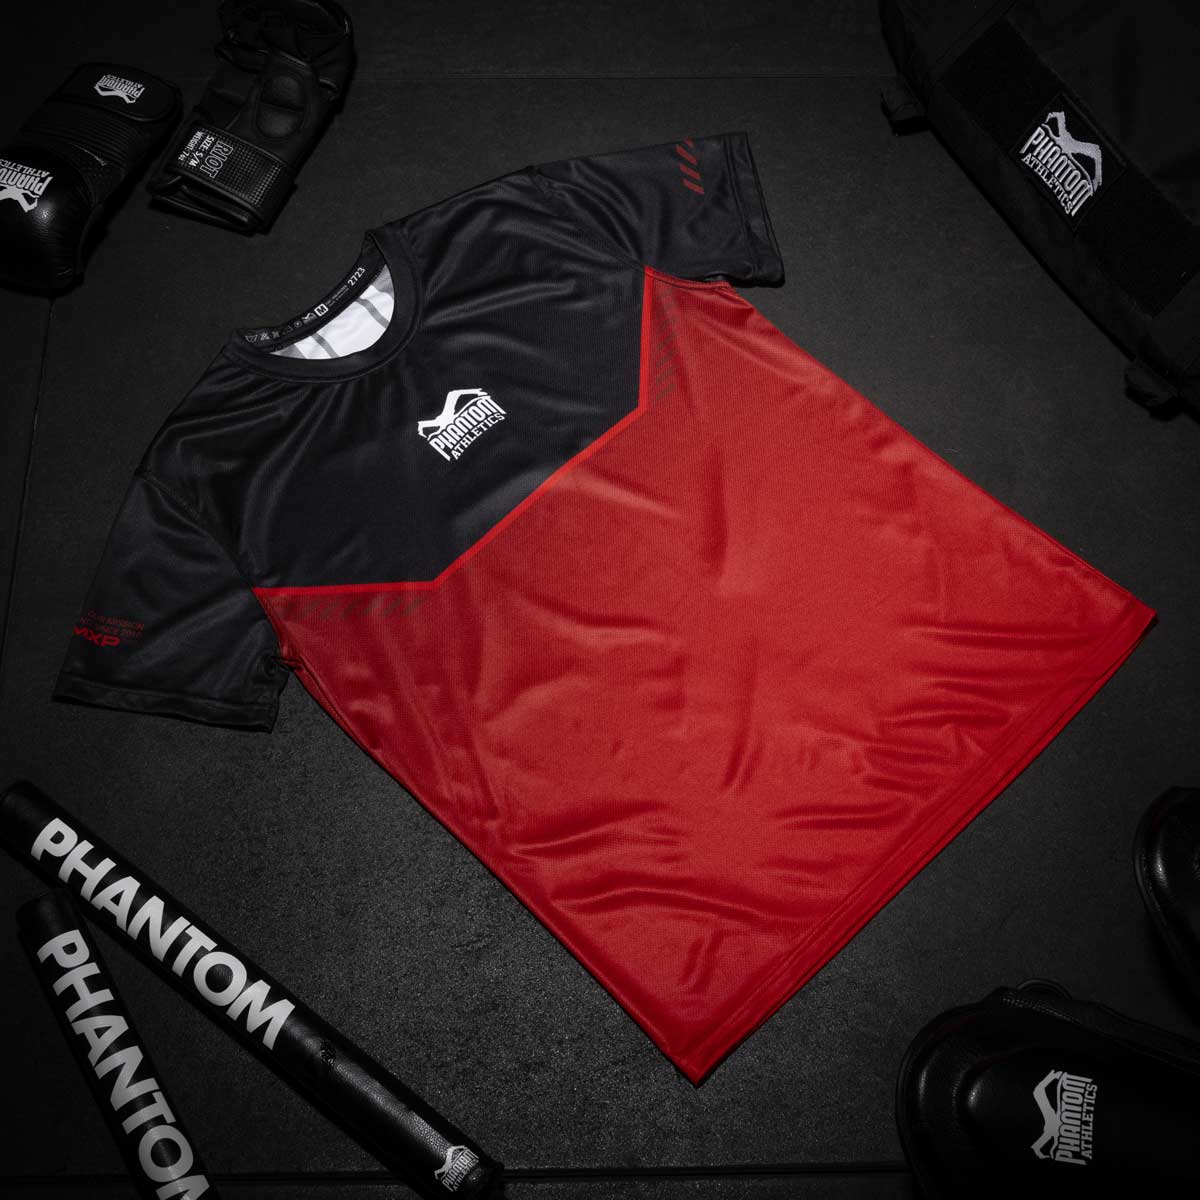 Das neue Phantom EVO Kampfsportshirt für dein Training. Ultra bequem zu tragen und schweißabweisend. Jetzt in der limitierten RED Edition.